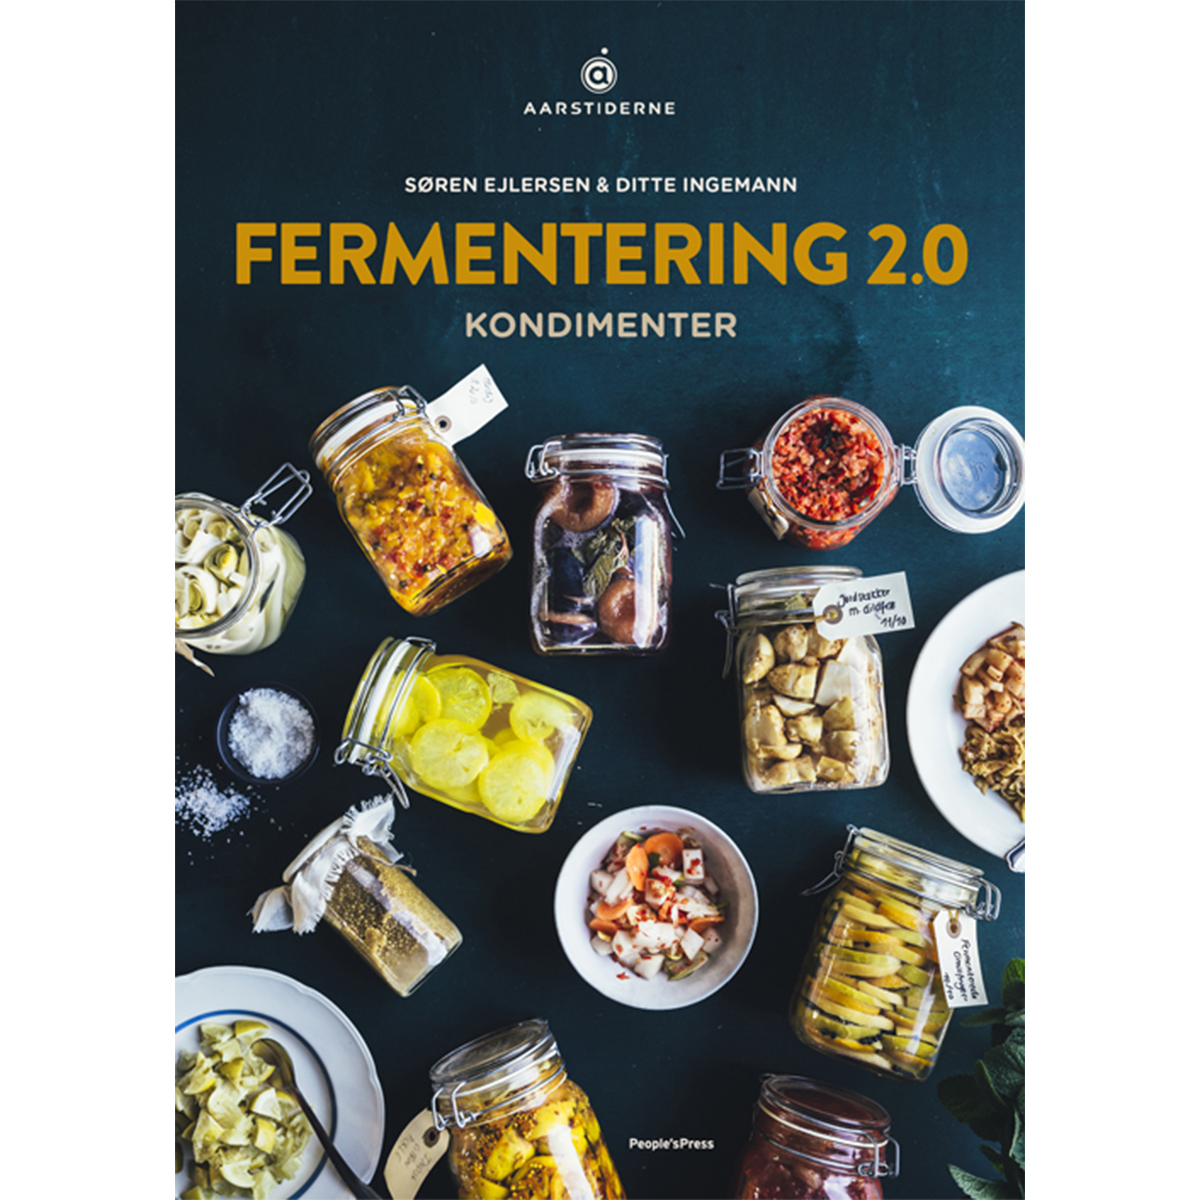 Fermentering 2.0 / Ditte Ingemann & Søren Ejlersen